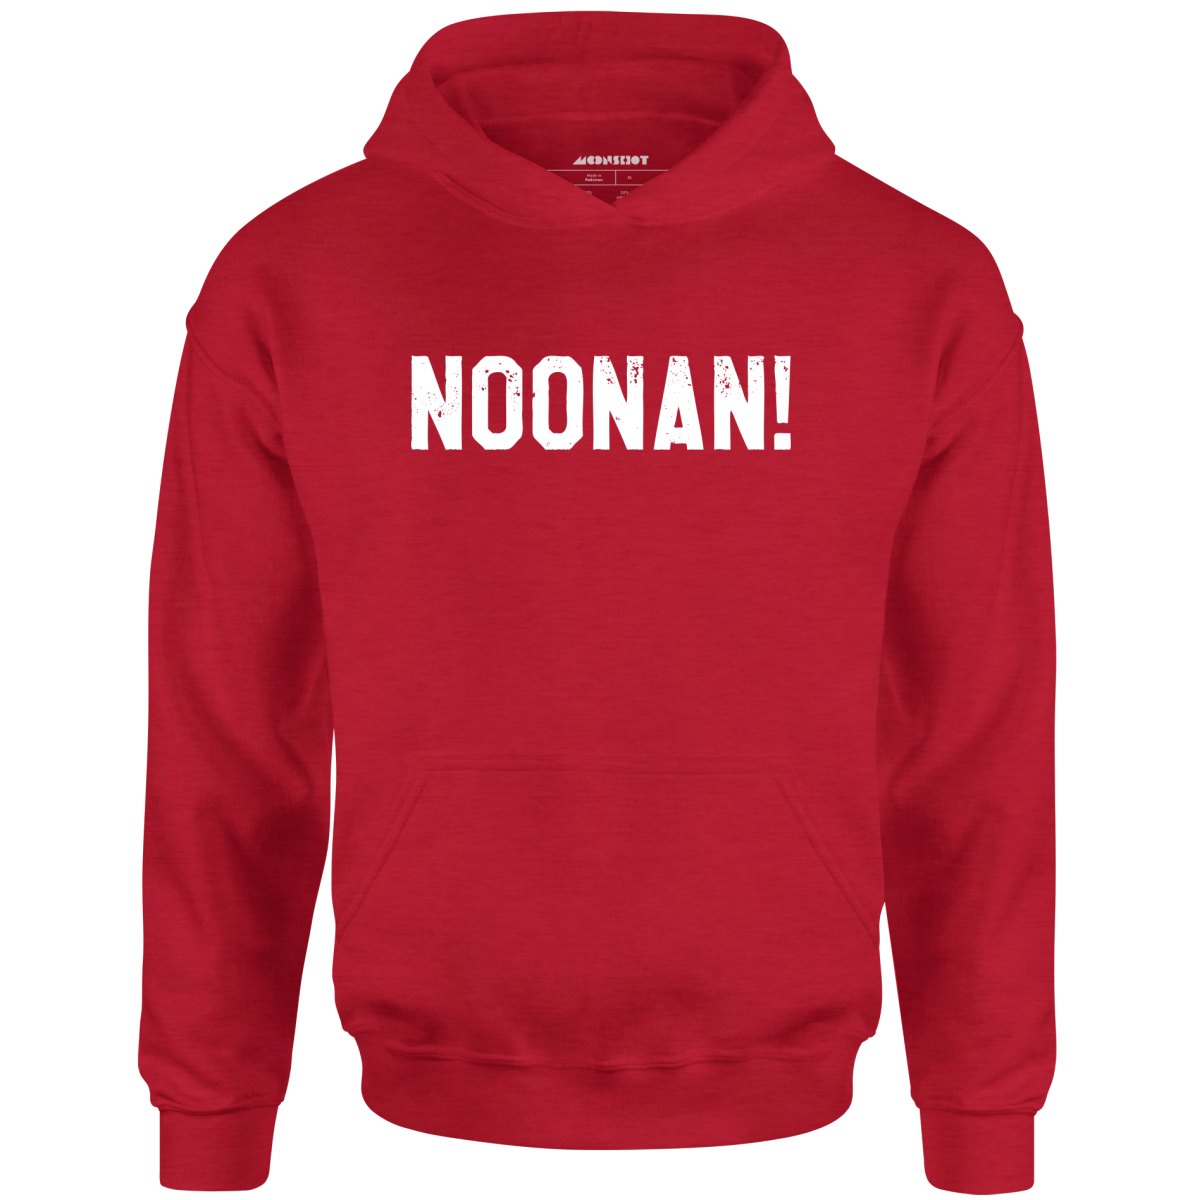 Noonan! - Unisex Hoodie